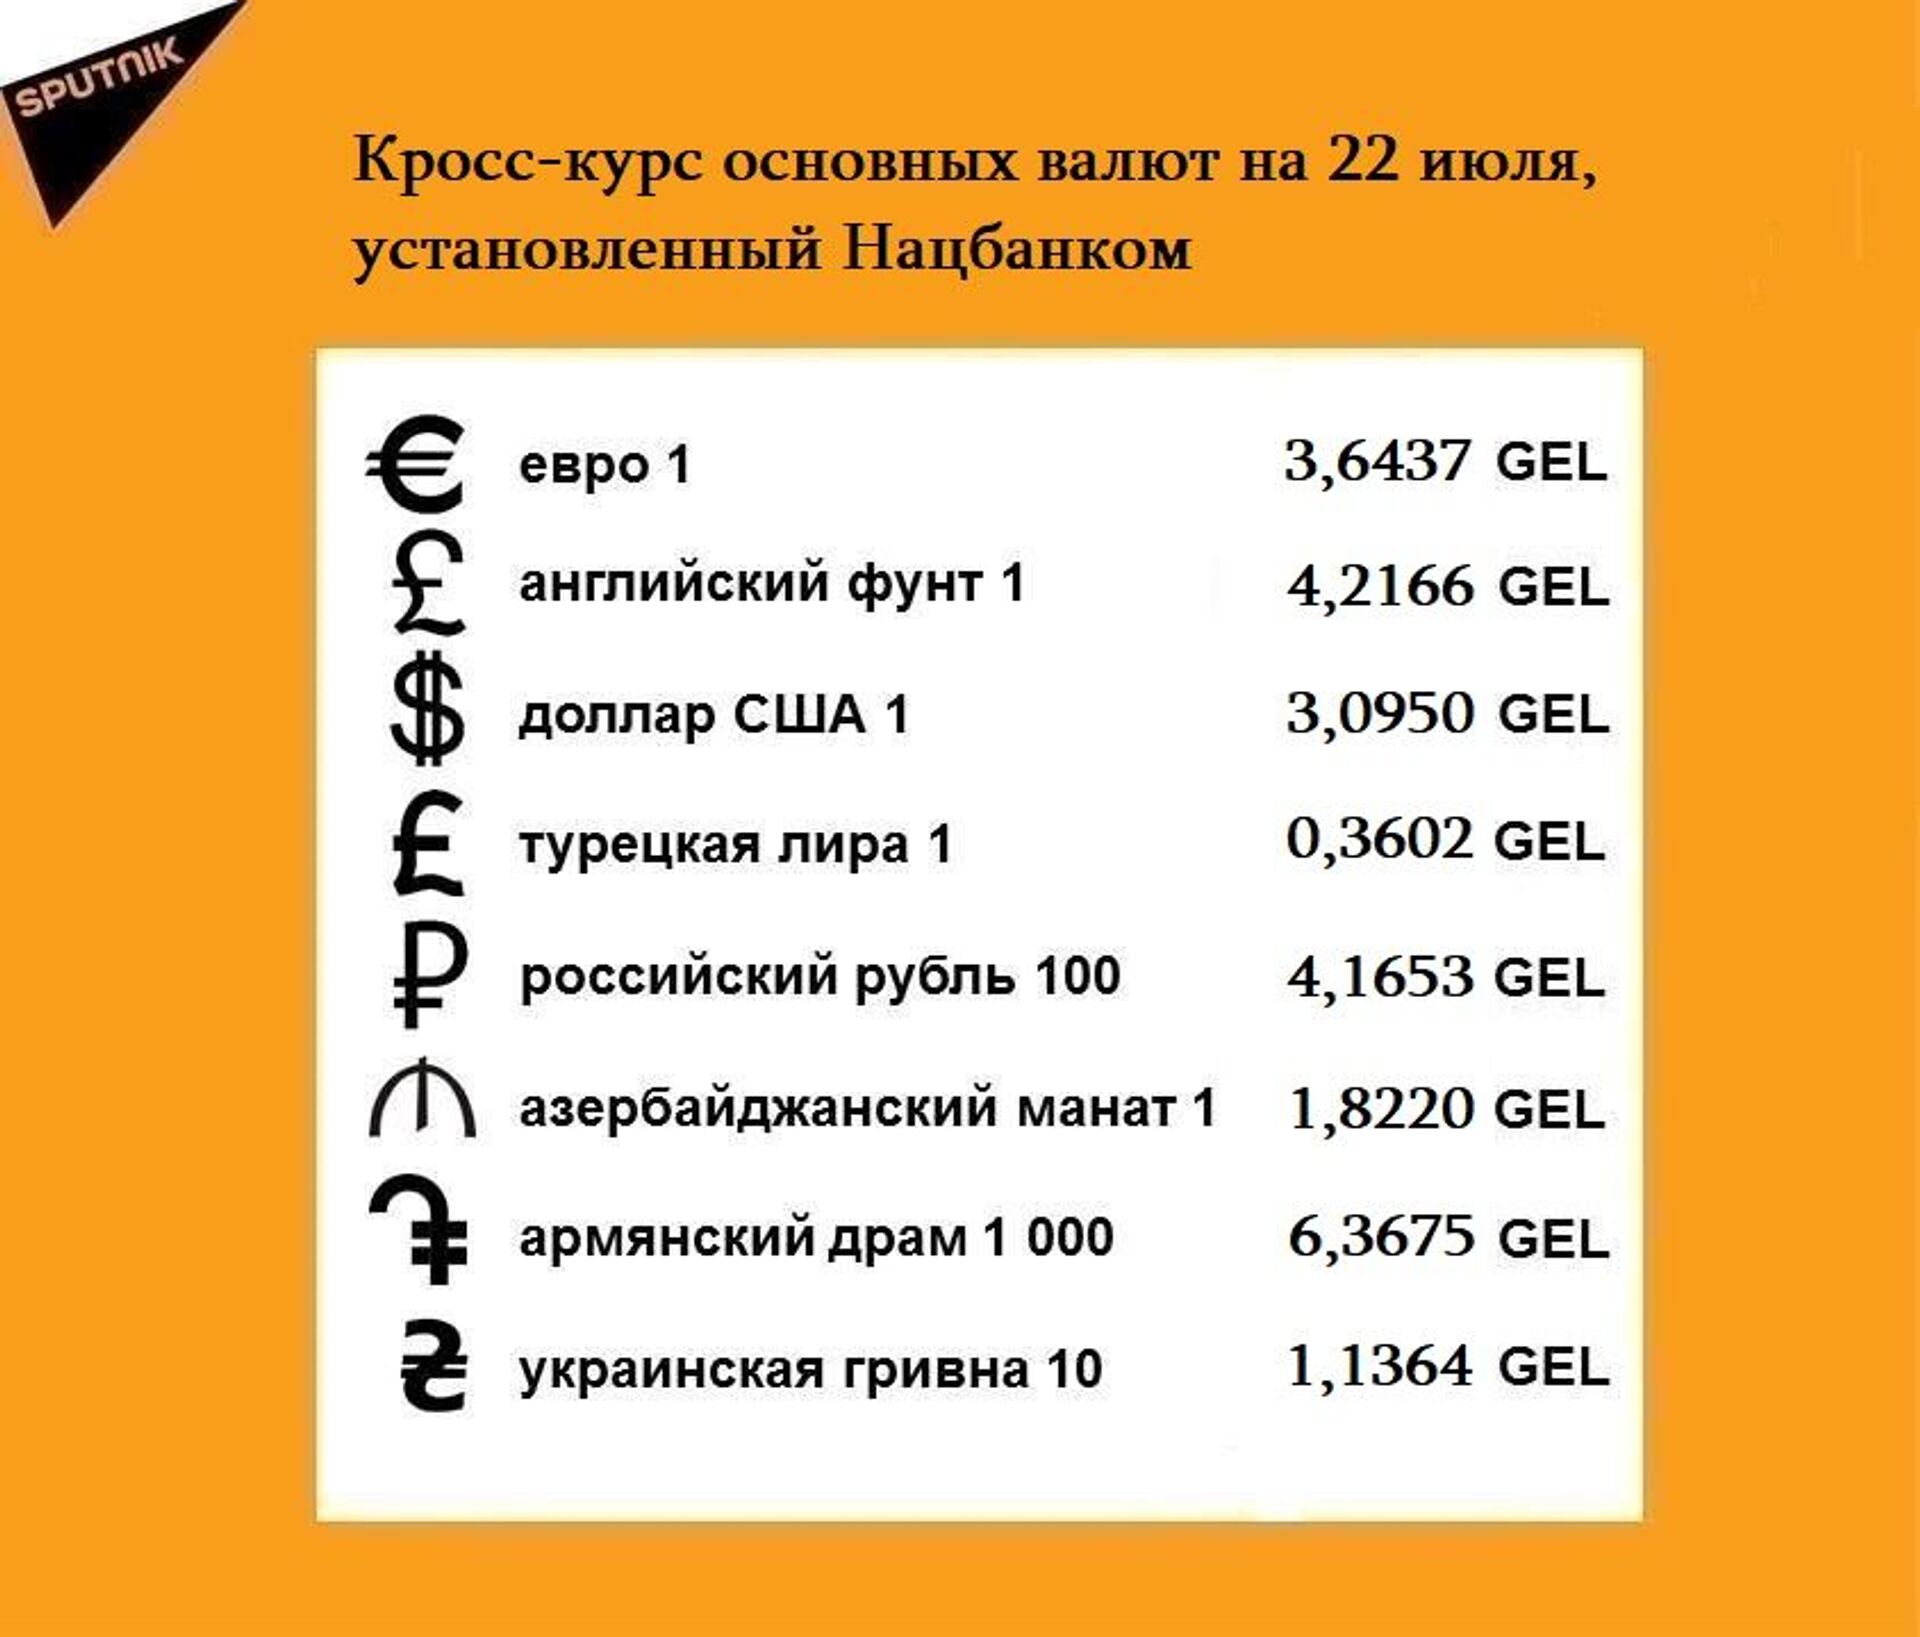 Кросс-курс основных валют на 21 июля - Sputnik Грузия, 1920, 24.08.2021